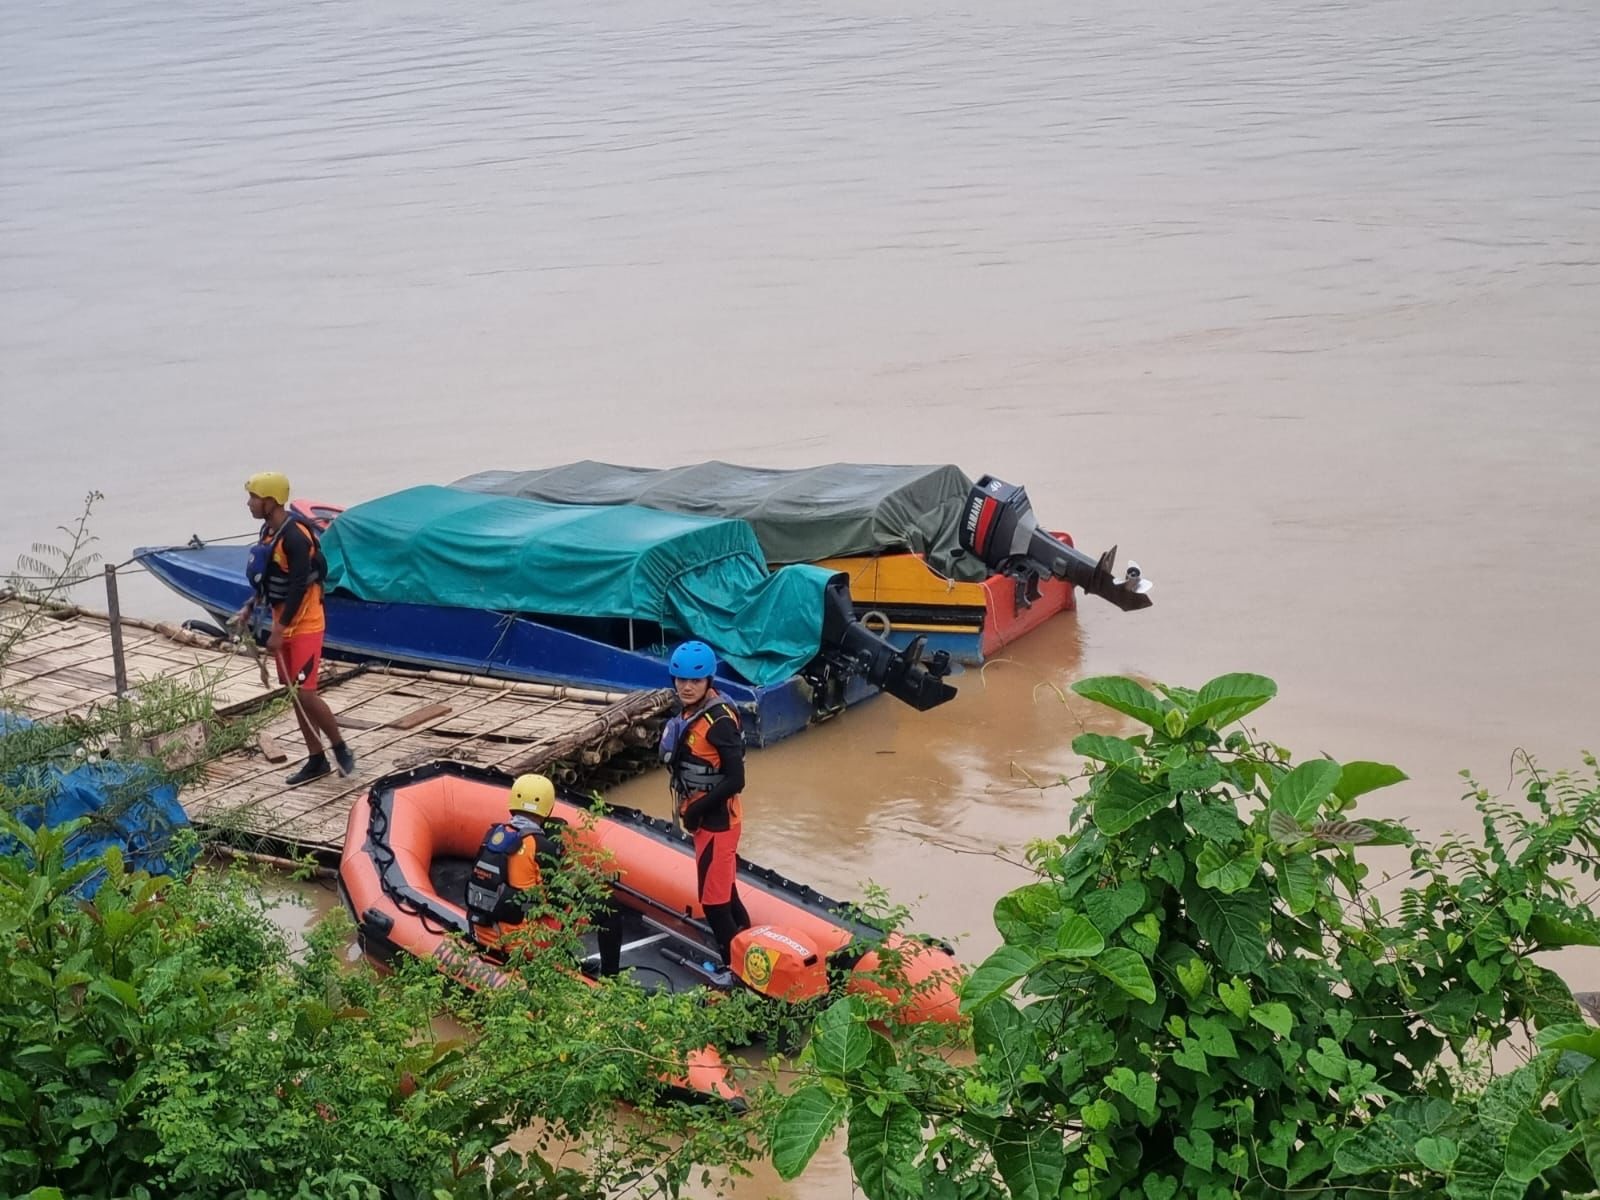 Seorang Pria Hilang saat Mencari Besi di Dasar Sungai Batanghari